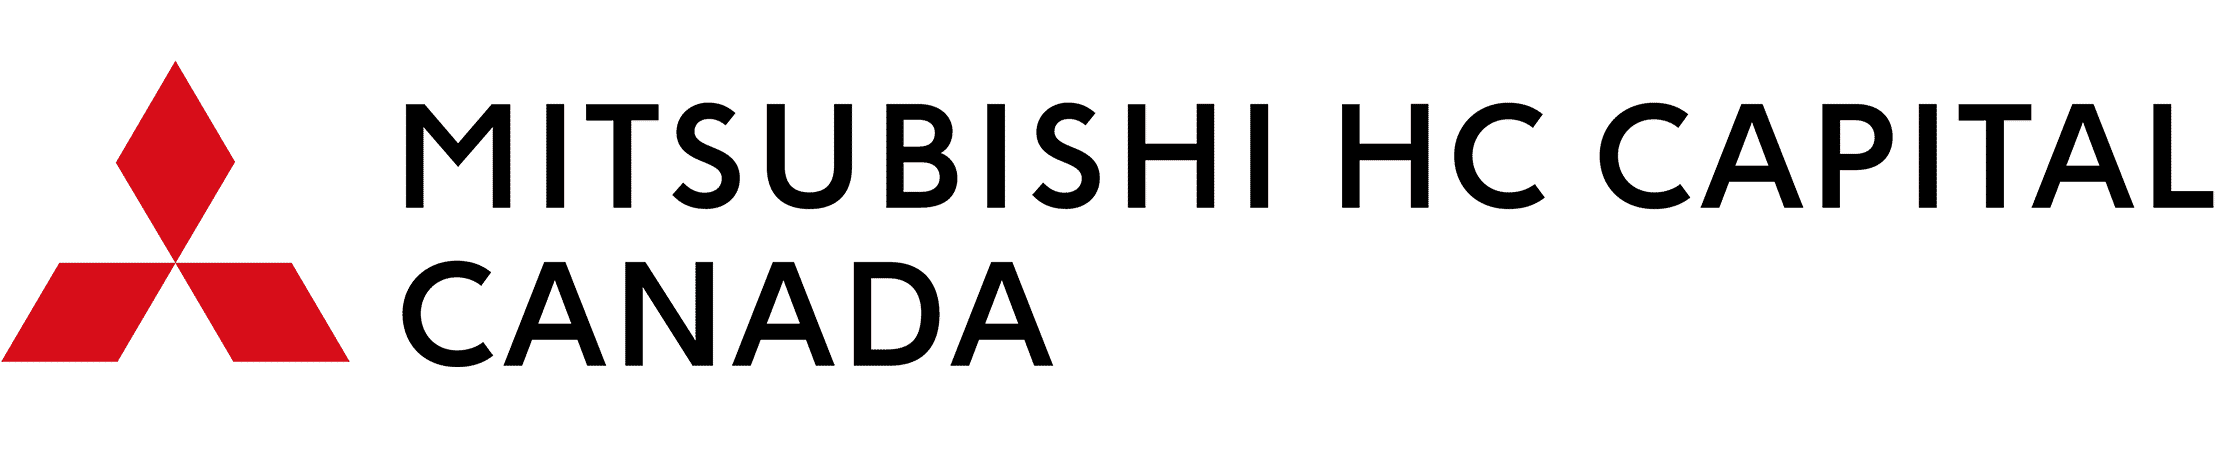 Mitsubishi HC capital Canada